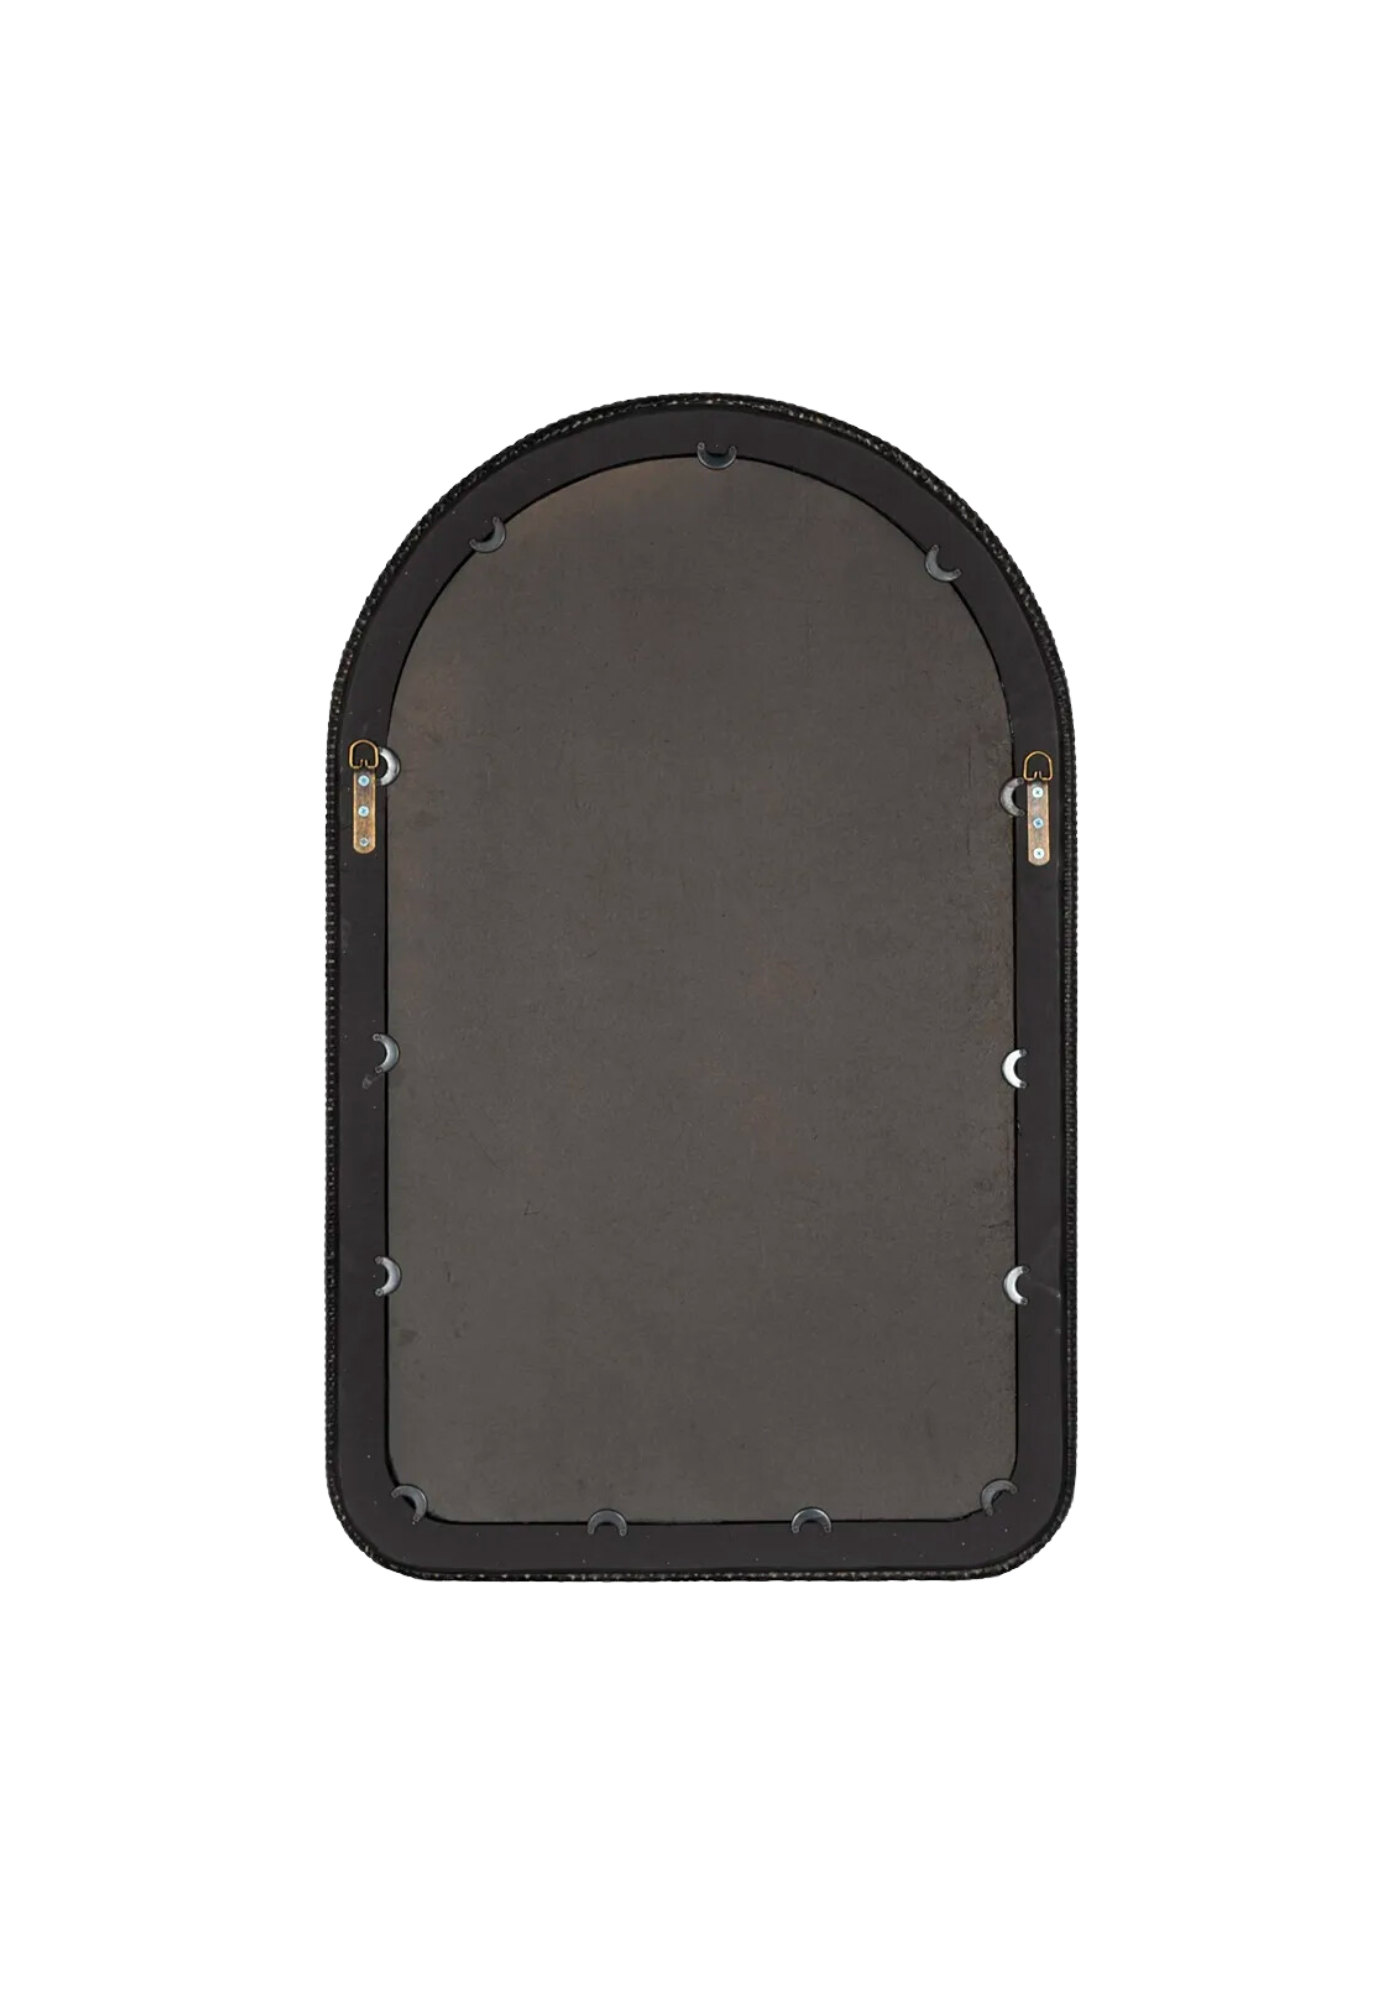 Textured Black Arch Mirror